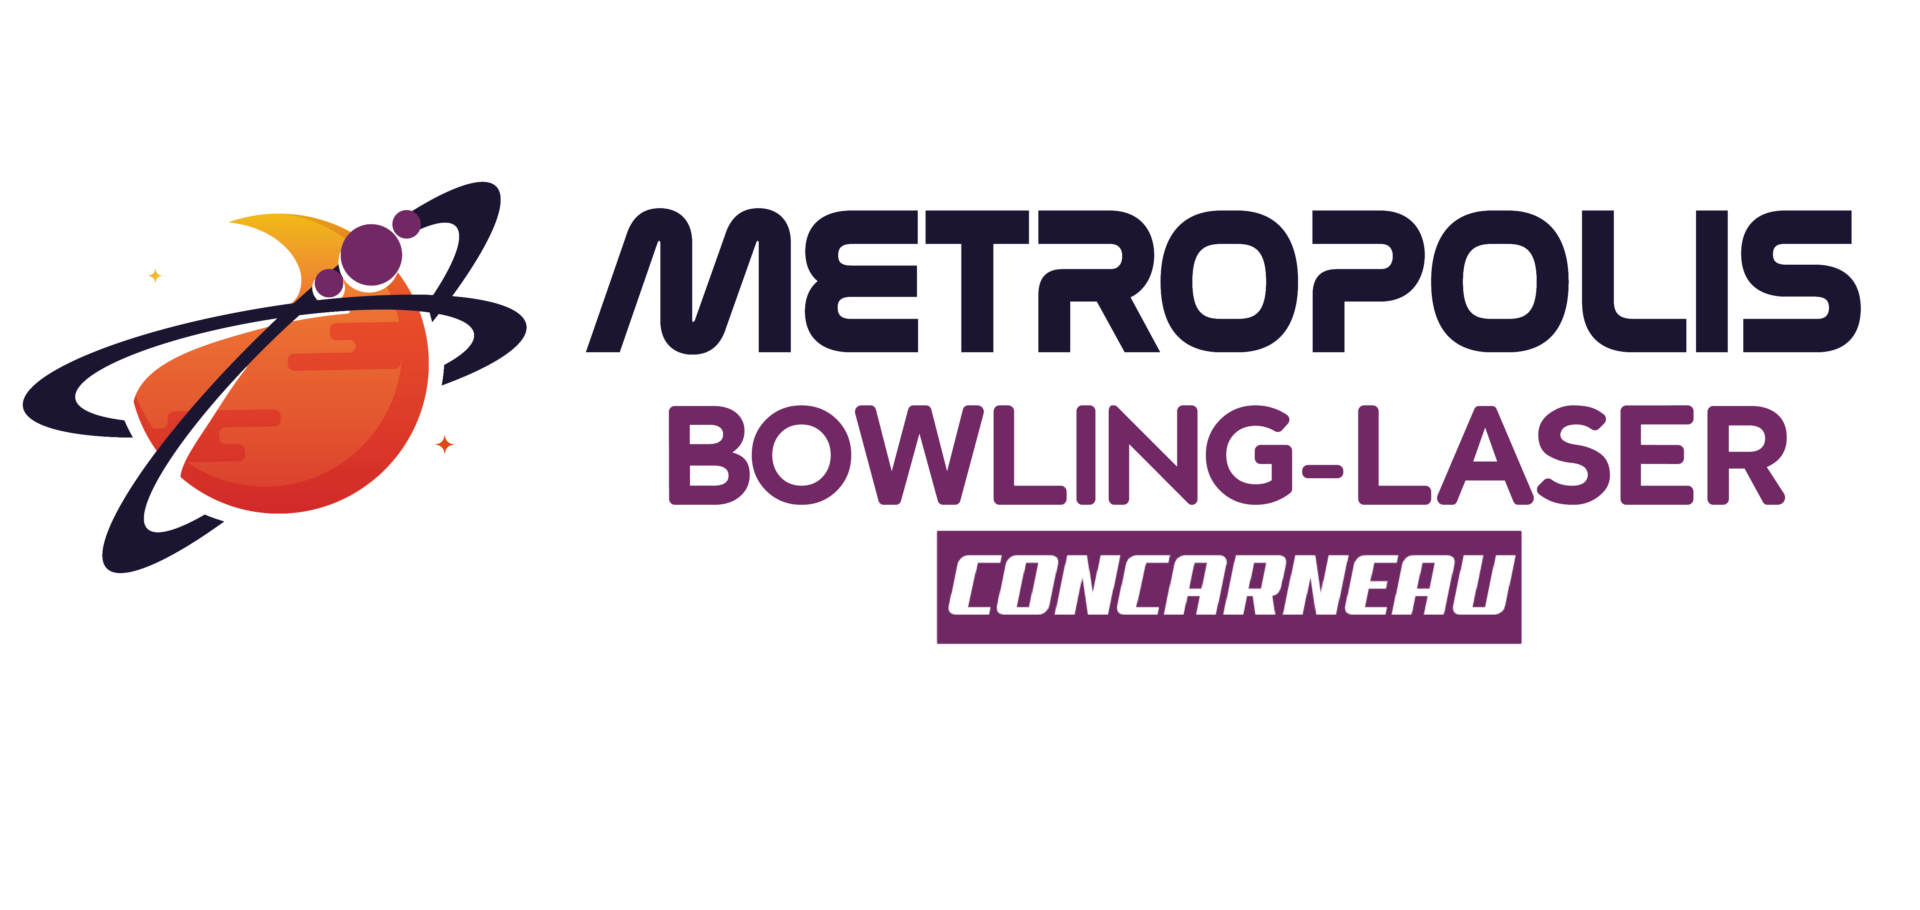 Métropolis Bowling – Laser